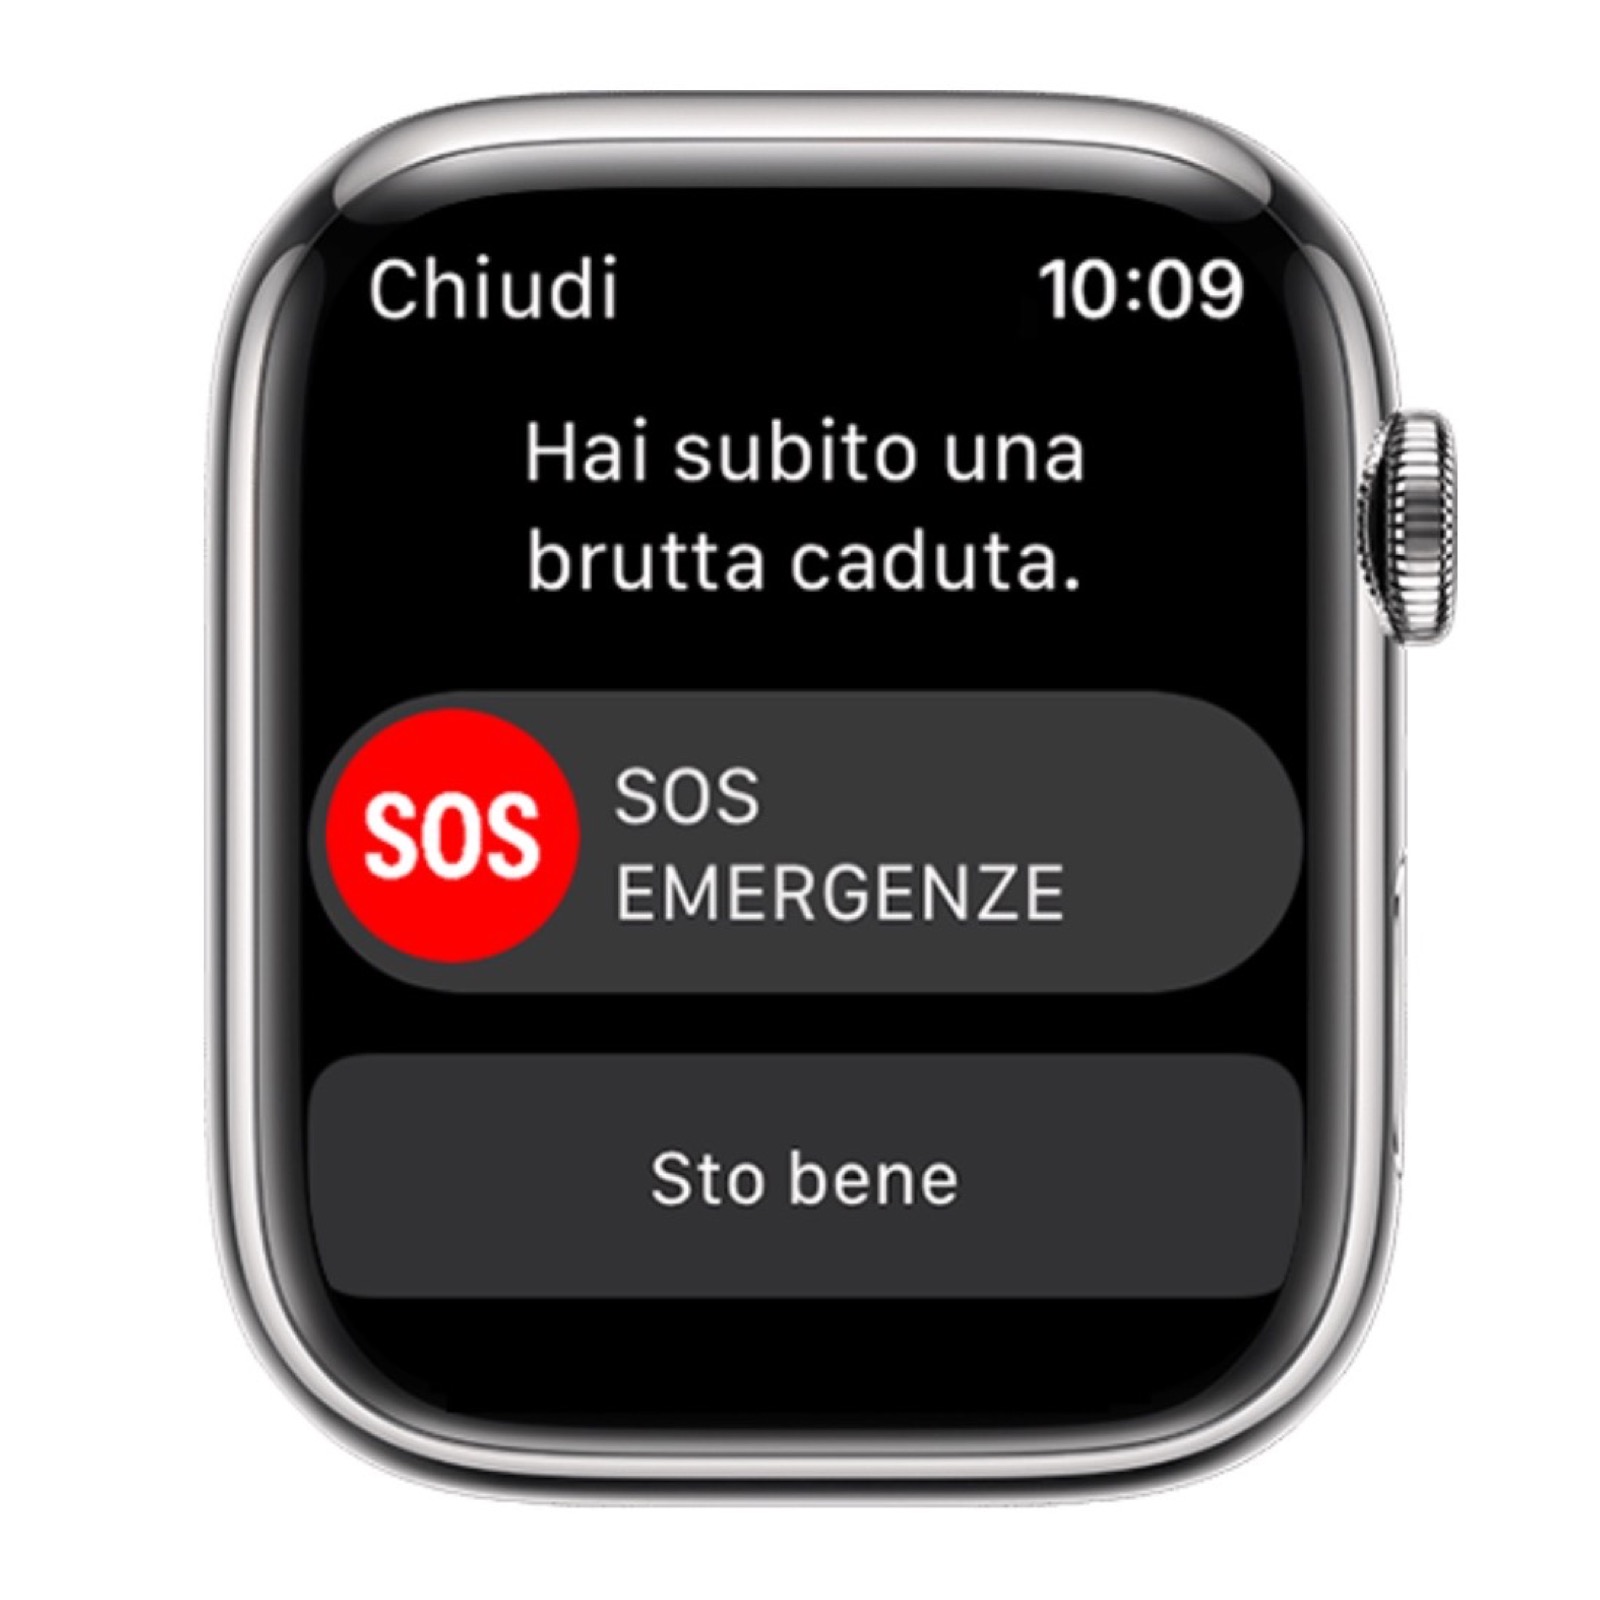 Apple Watch, dottore lo consiglia a tutti i pazienti dopo incidente